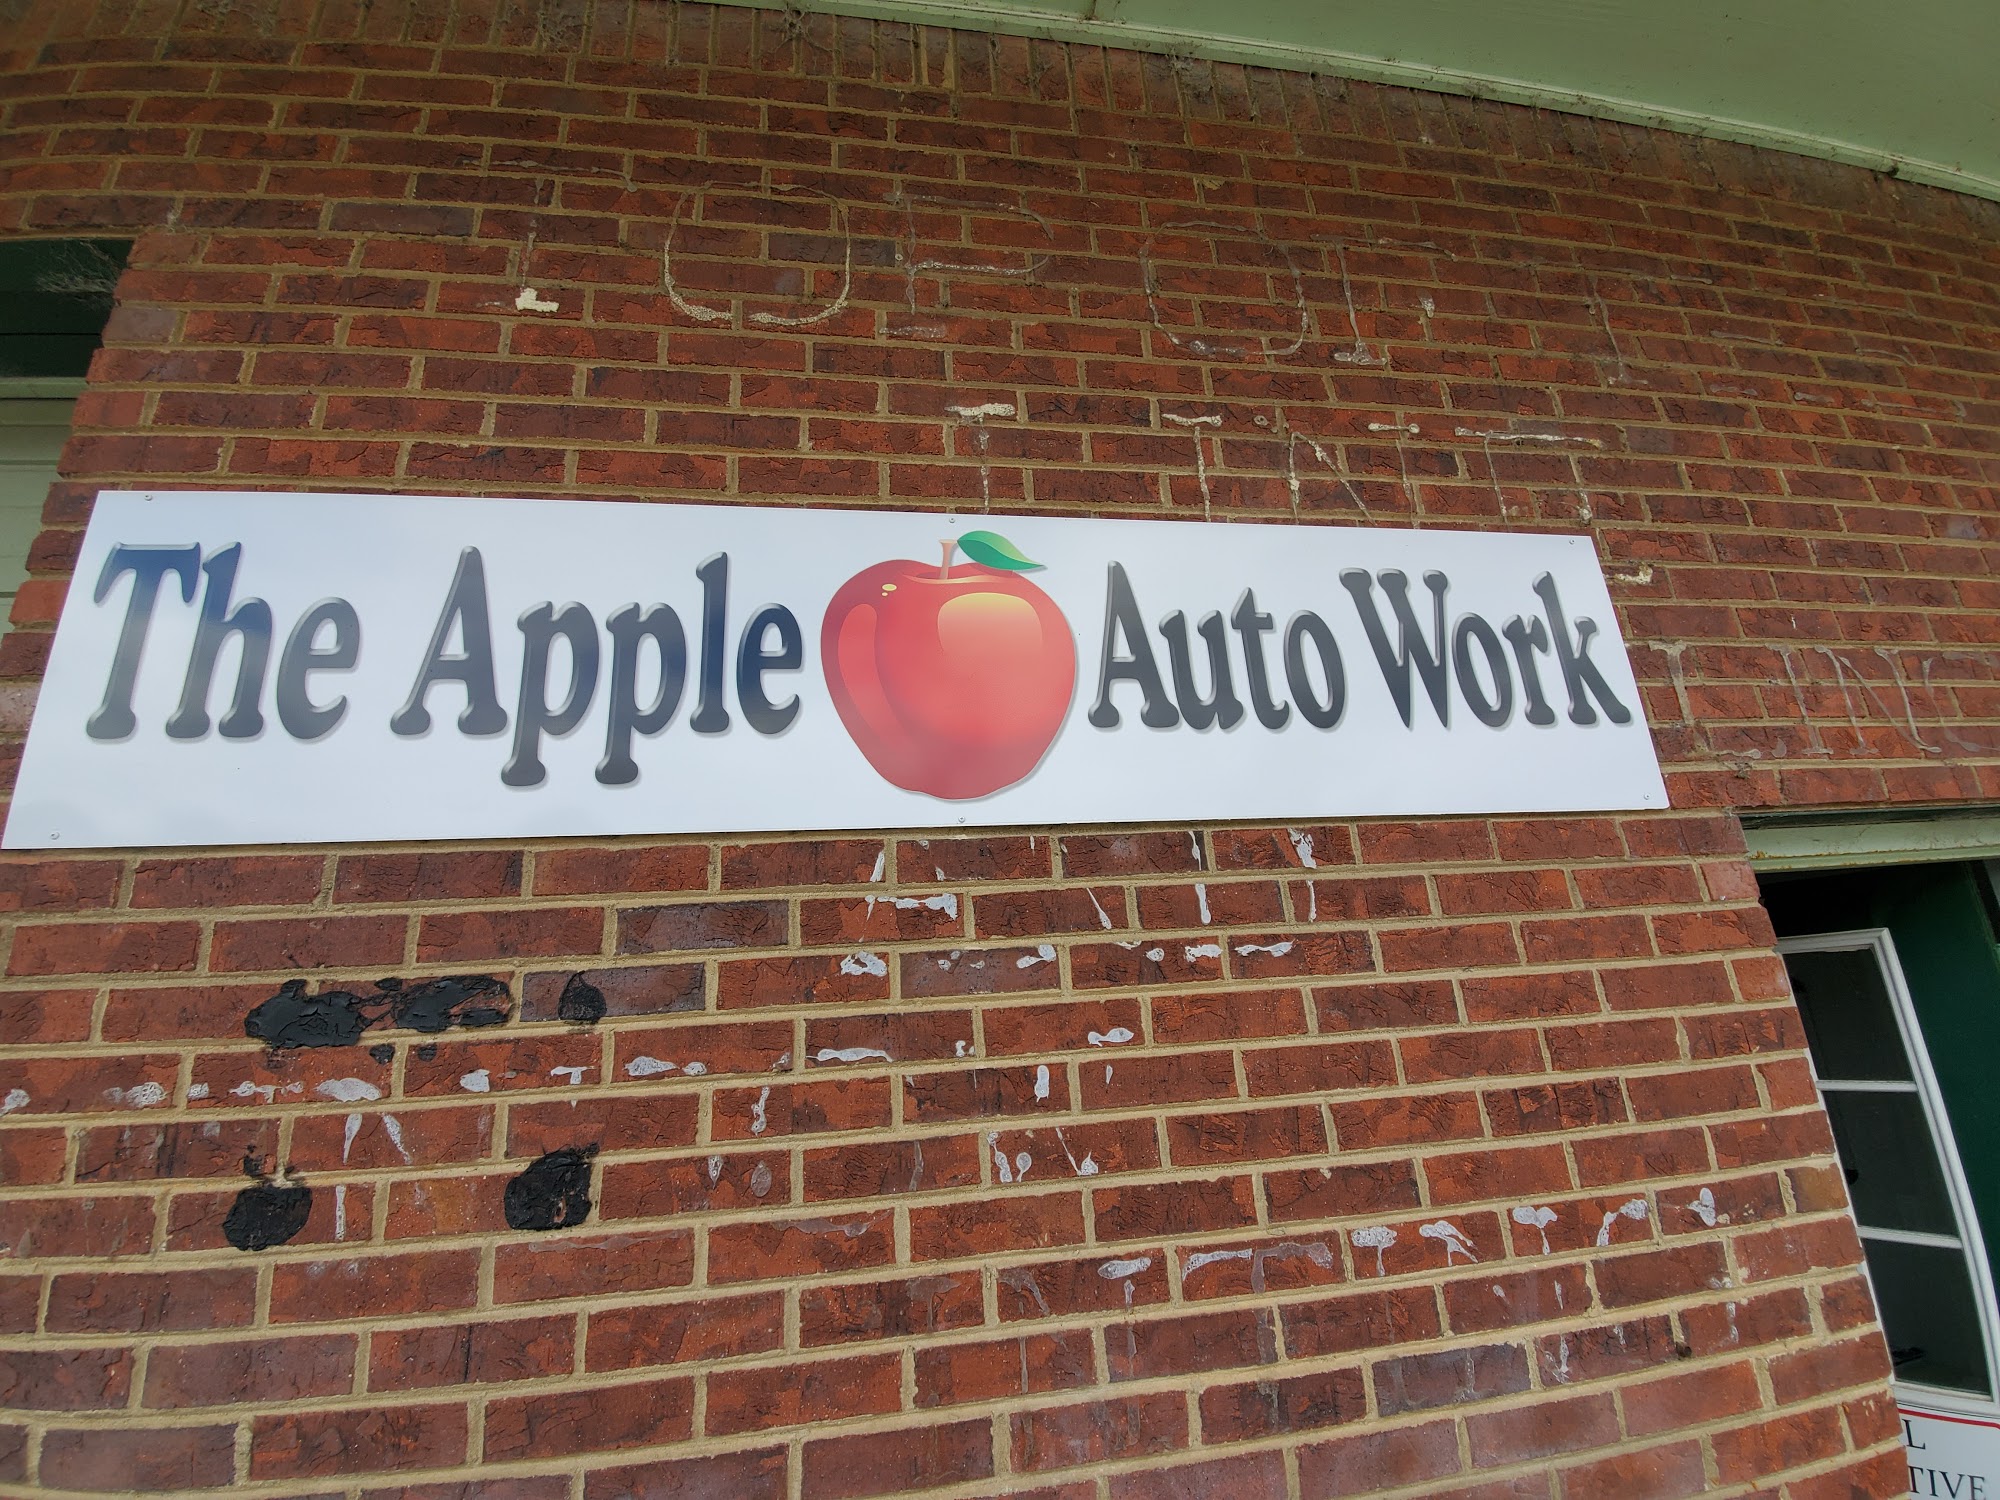 Apple Auto Work